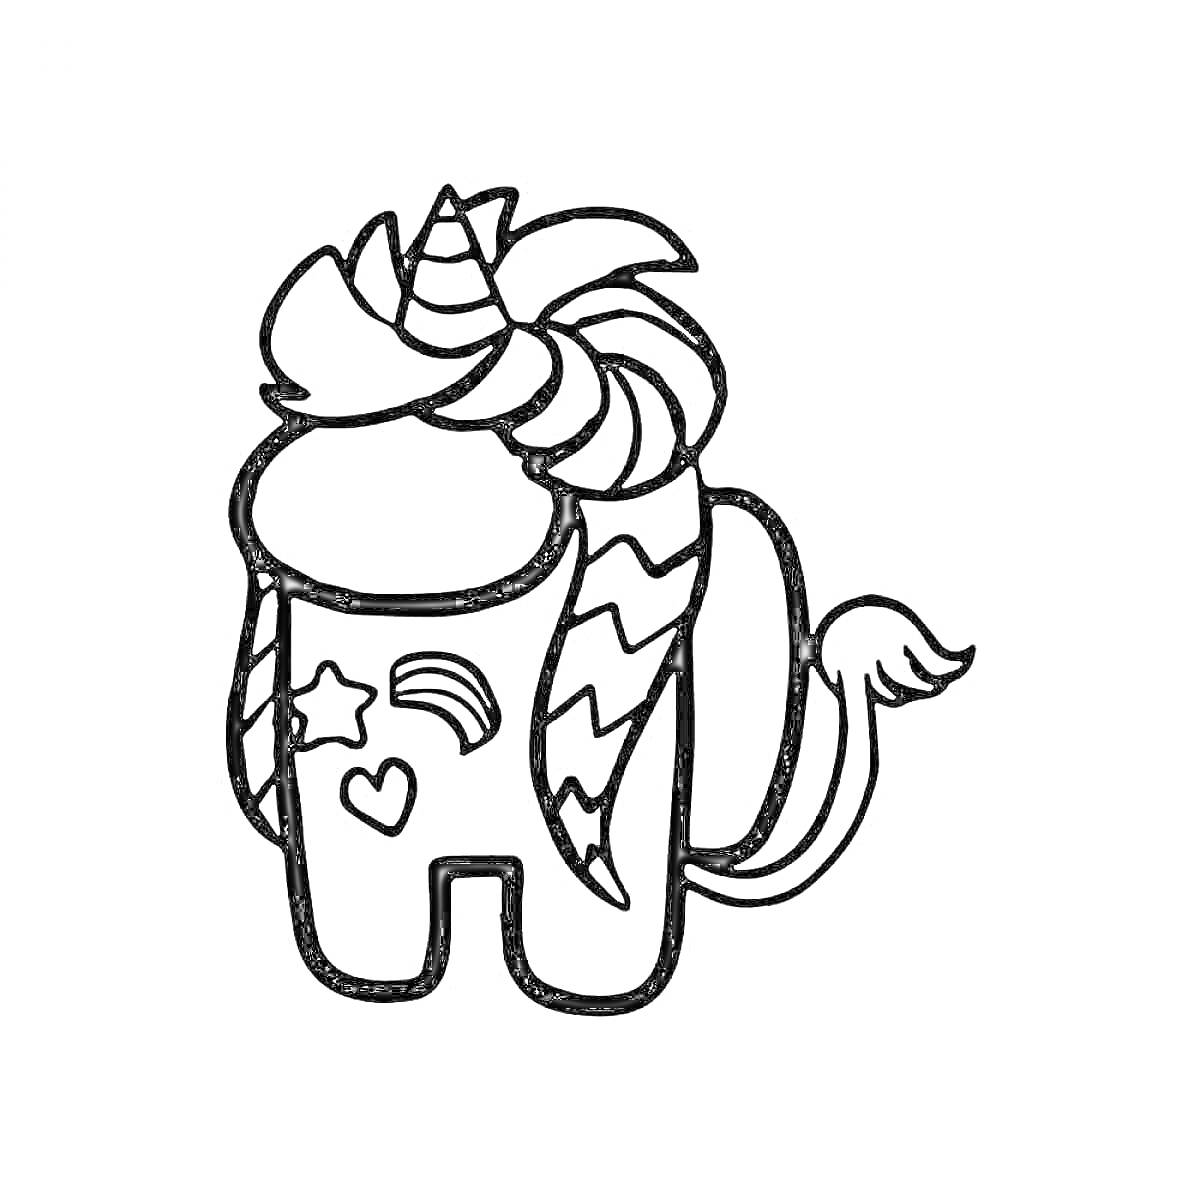 Раскраска Амонгас-персонаж с радугой, сердцем и звездой на теле, одетый в костюм единорога с рогом и гривой